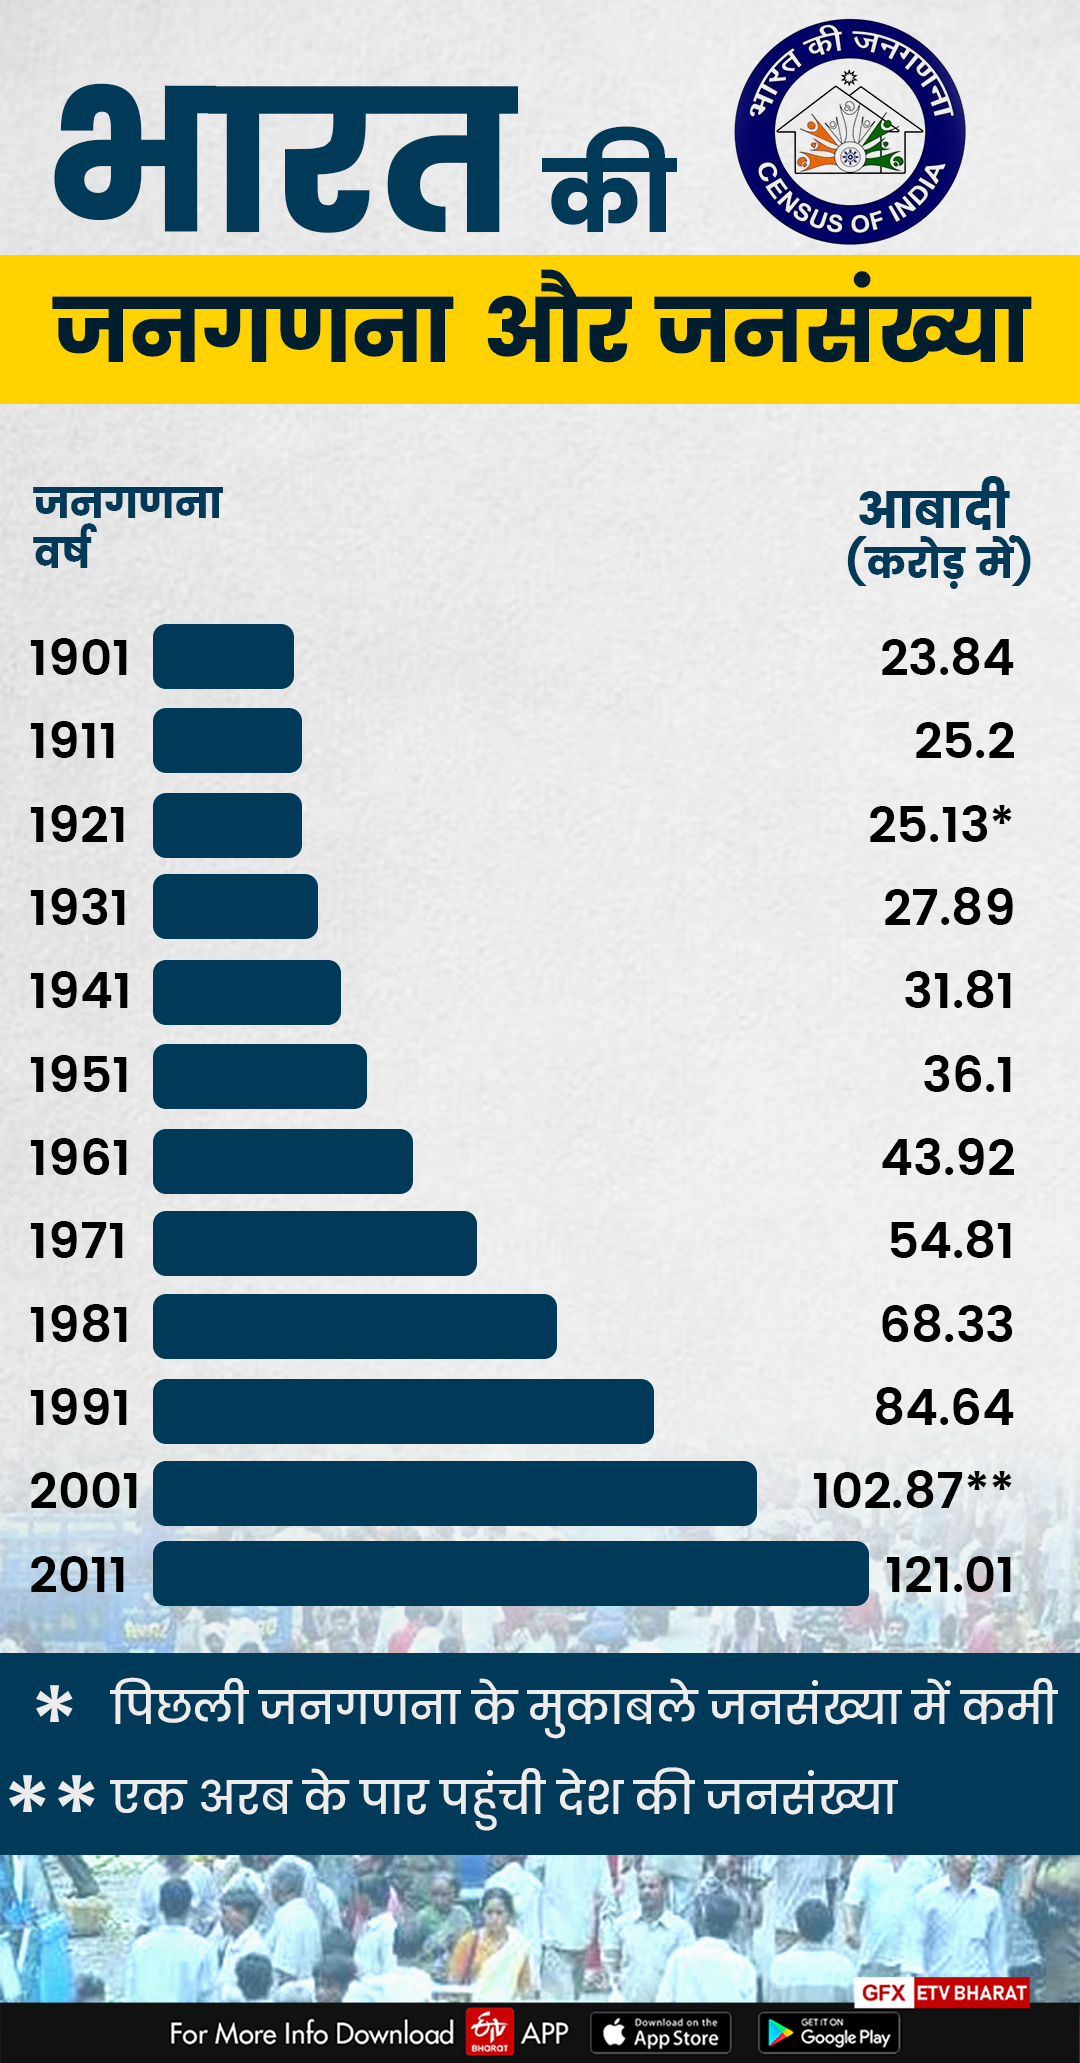 भारत की जनगणना और जनसंख्या